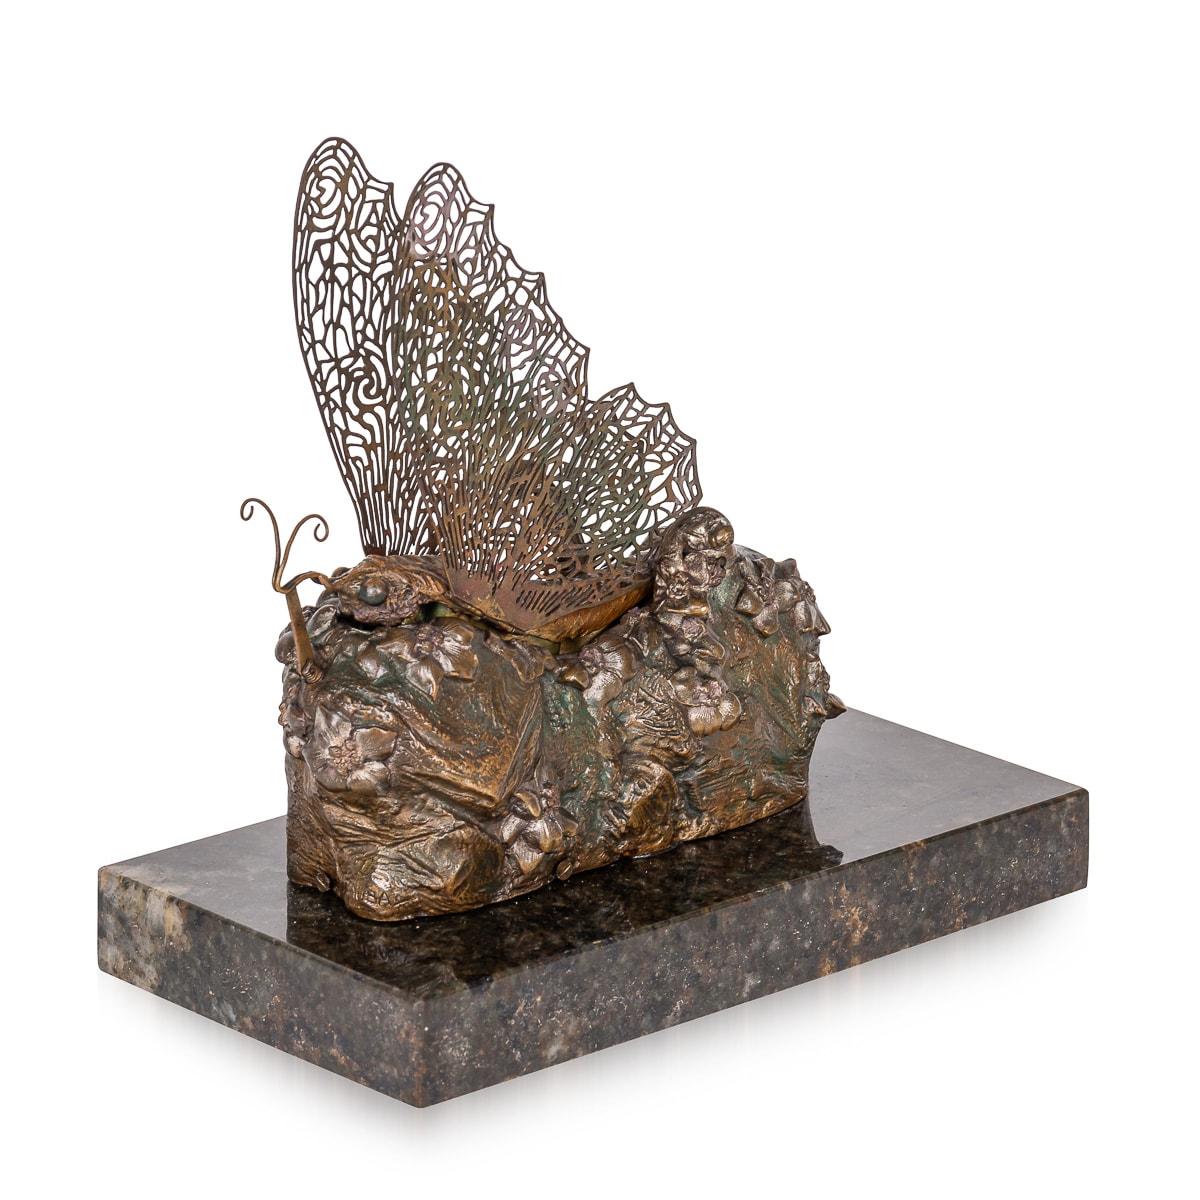 Papillon en bronze métamorphique peint et doré du début du XXe siècle, réalisé par l'Autrichien Carl Kauba (1865 - 1922). Il s'agit d'un papillon perché sur une base feuillue, qui s'ouvre pour révéler une fée nue. Les ailes sont articulées grâce à